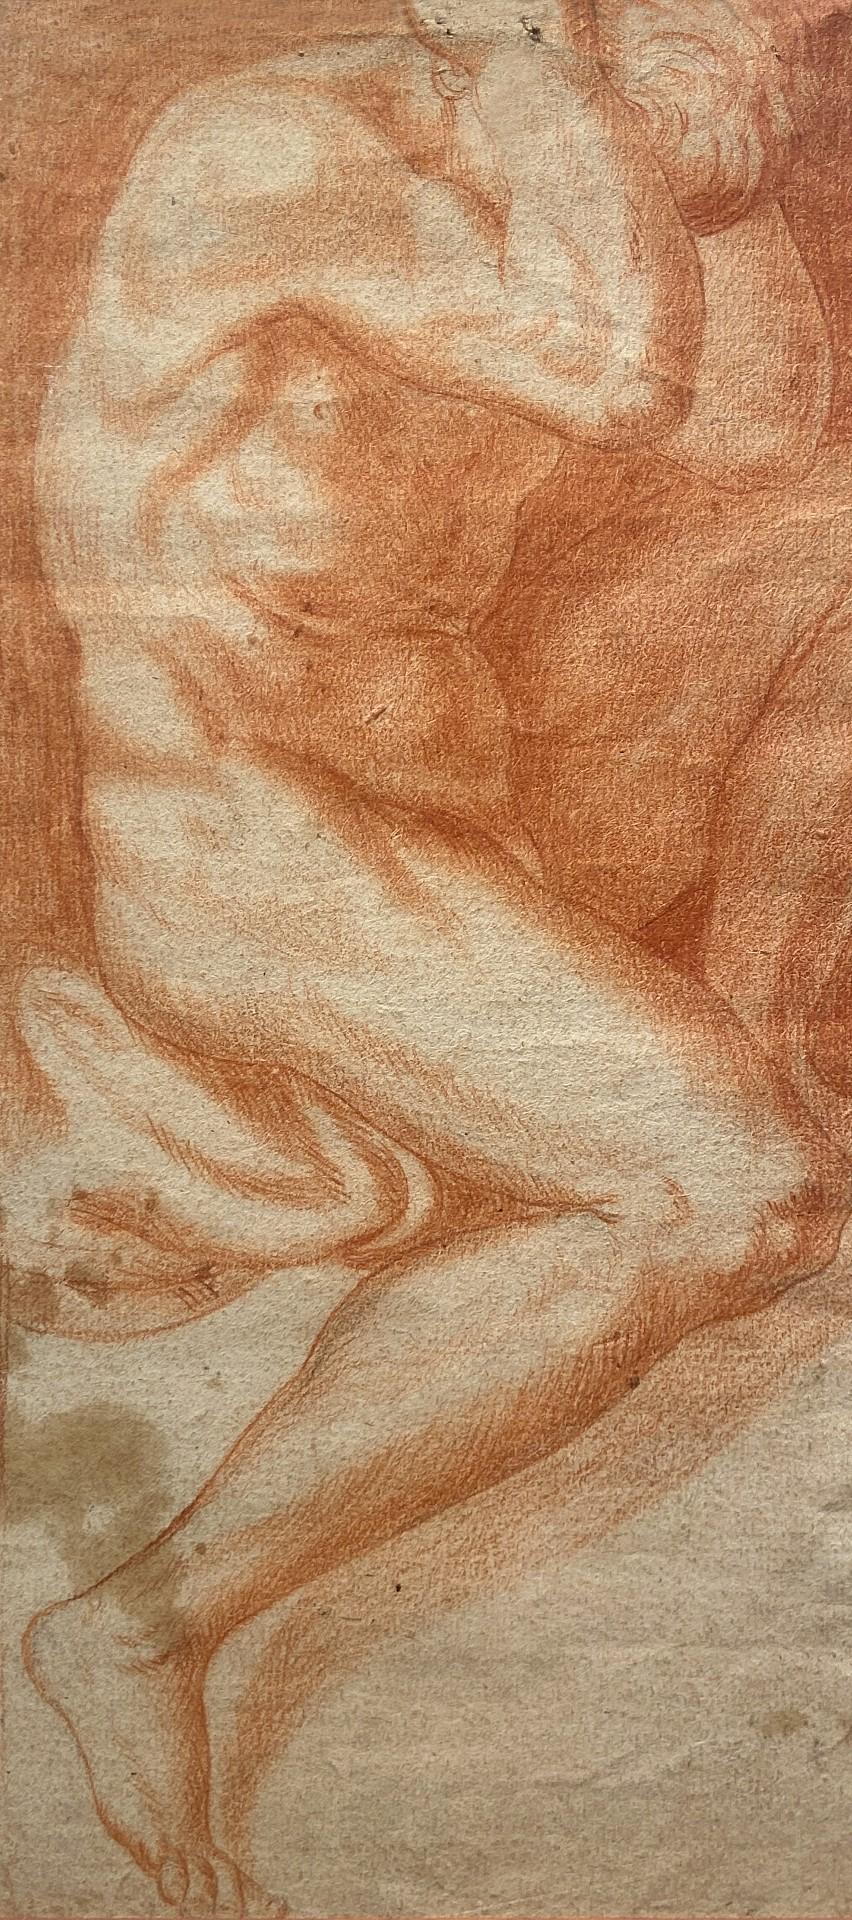 The Captive, Étude d'un homme nu, Étude à la craie rouge, Galerie Carracci